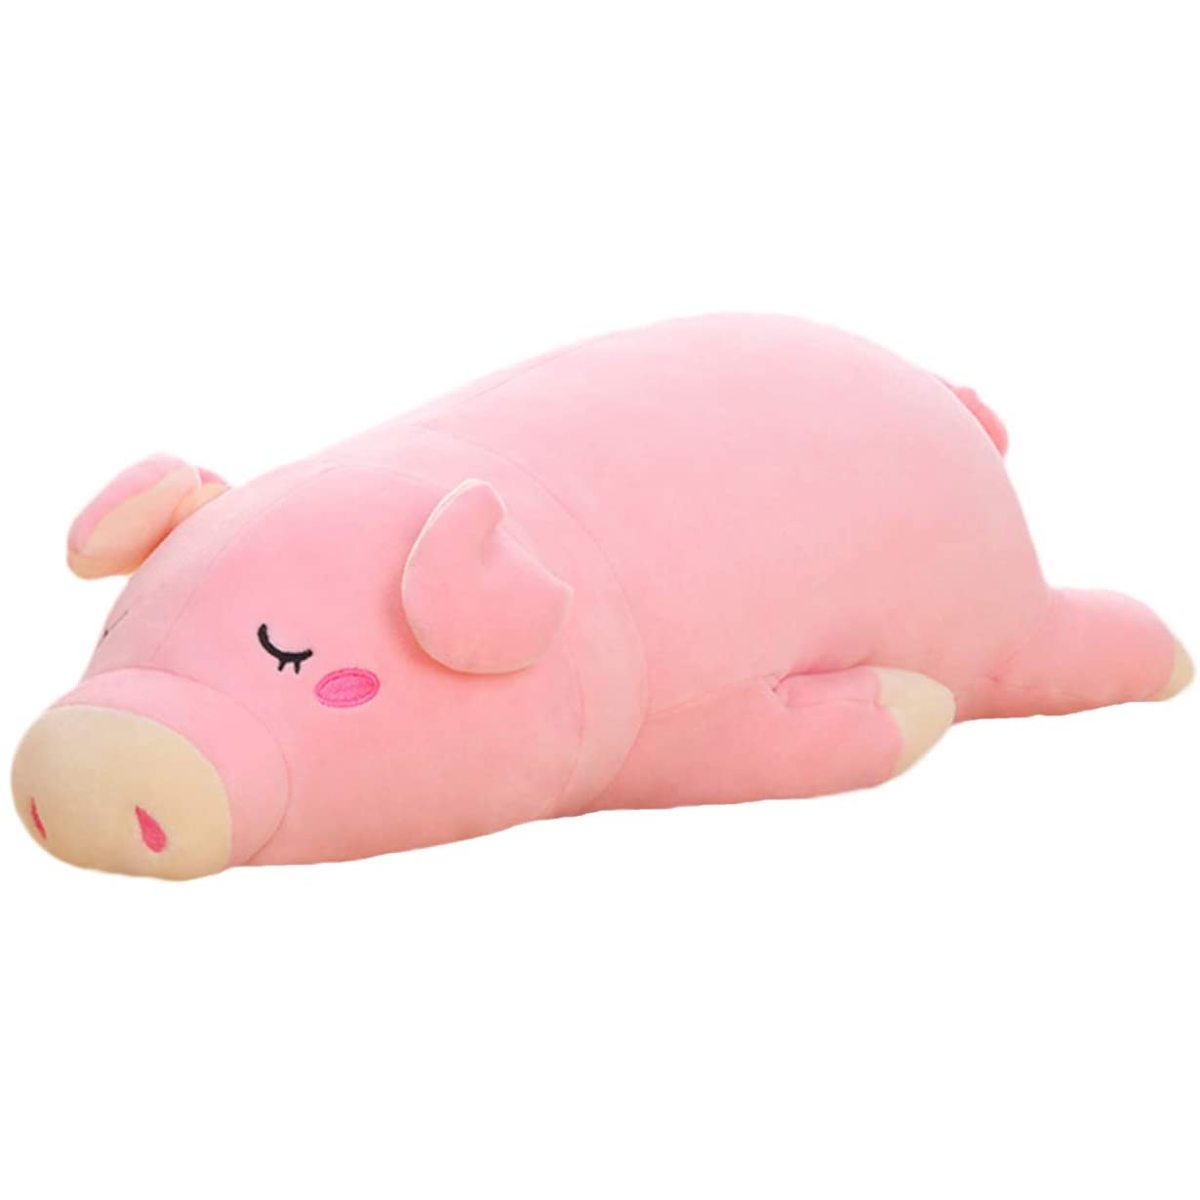 Pink Plüsch-Handpuppe Neu * Schwein Toi-Toys 30 cm ca 